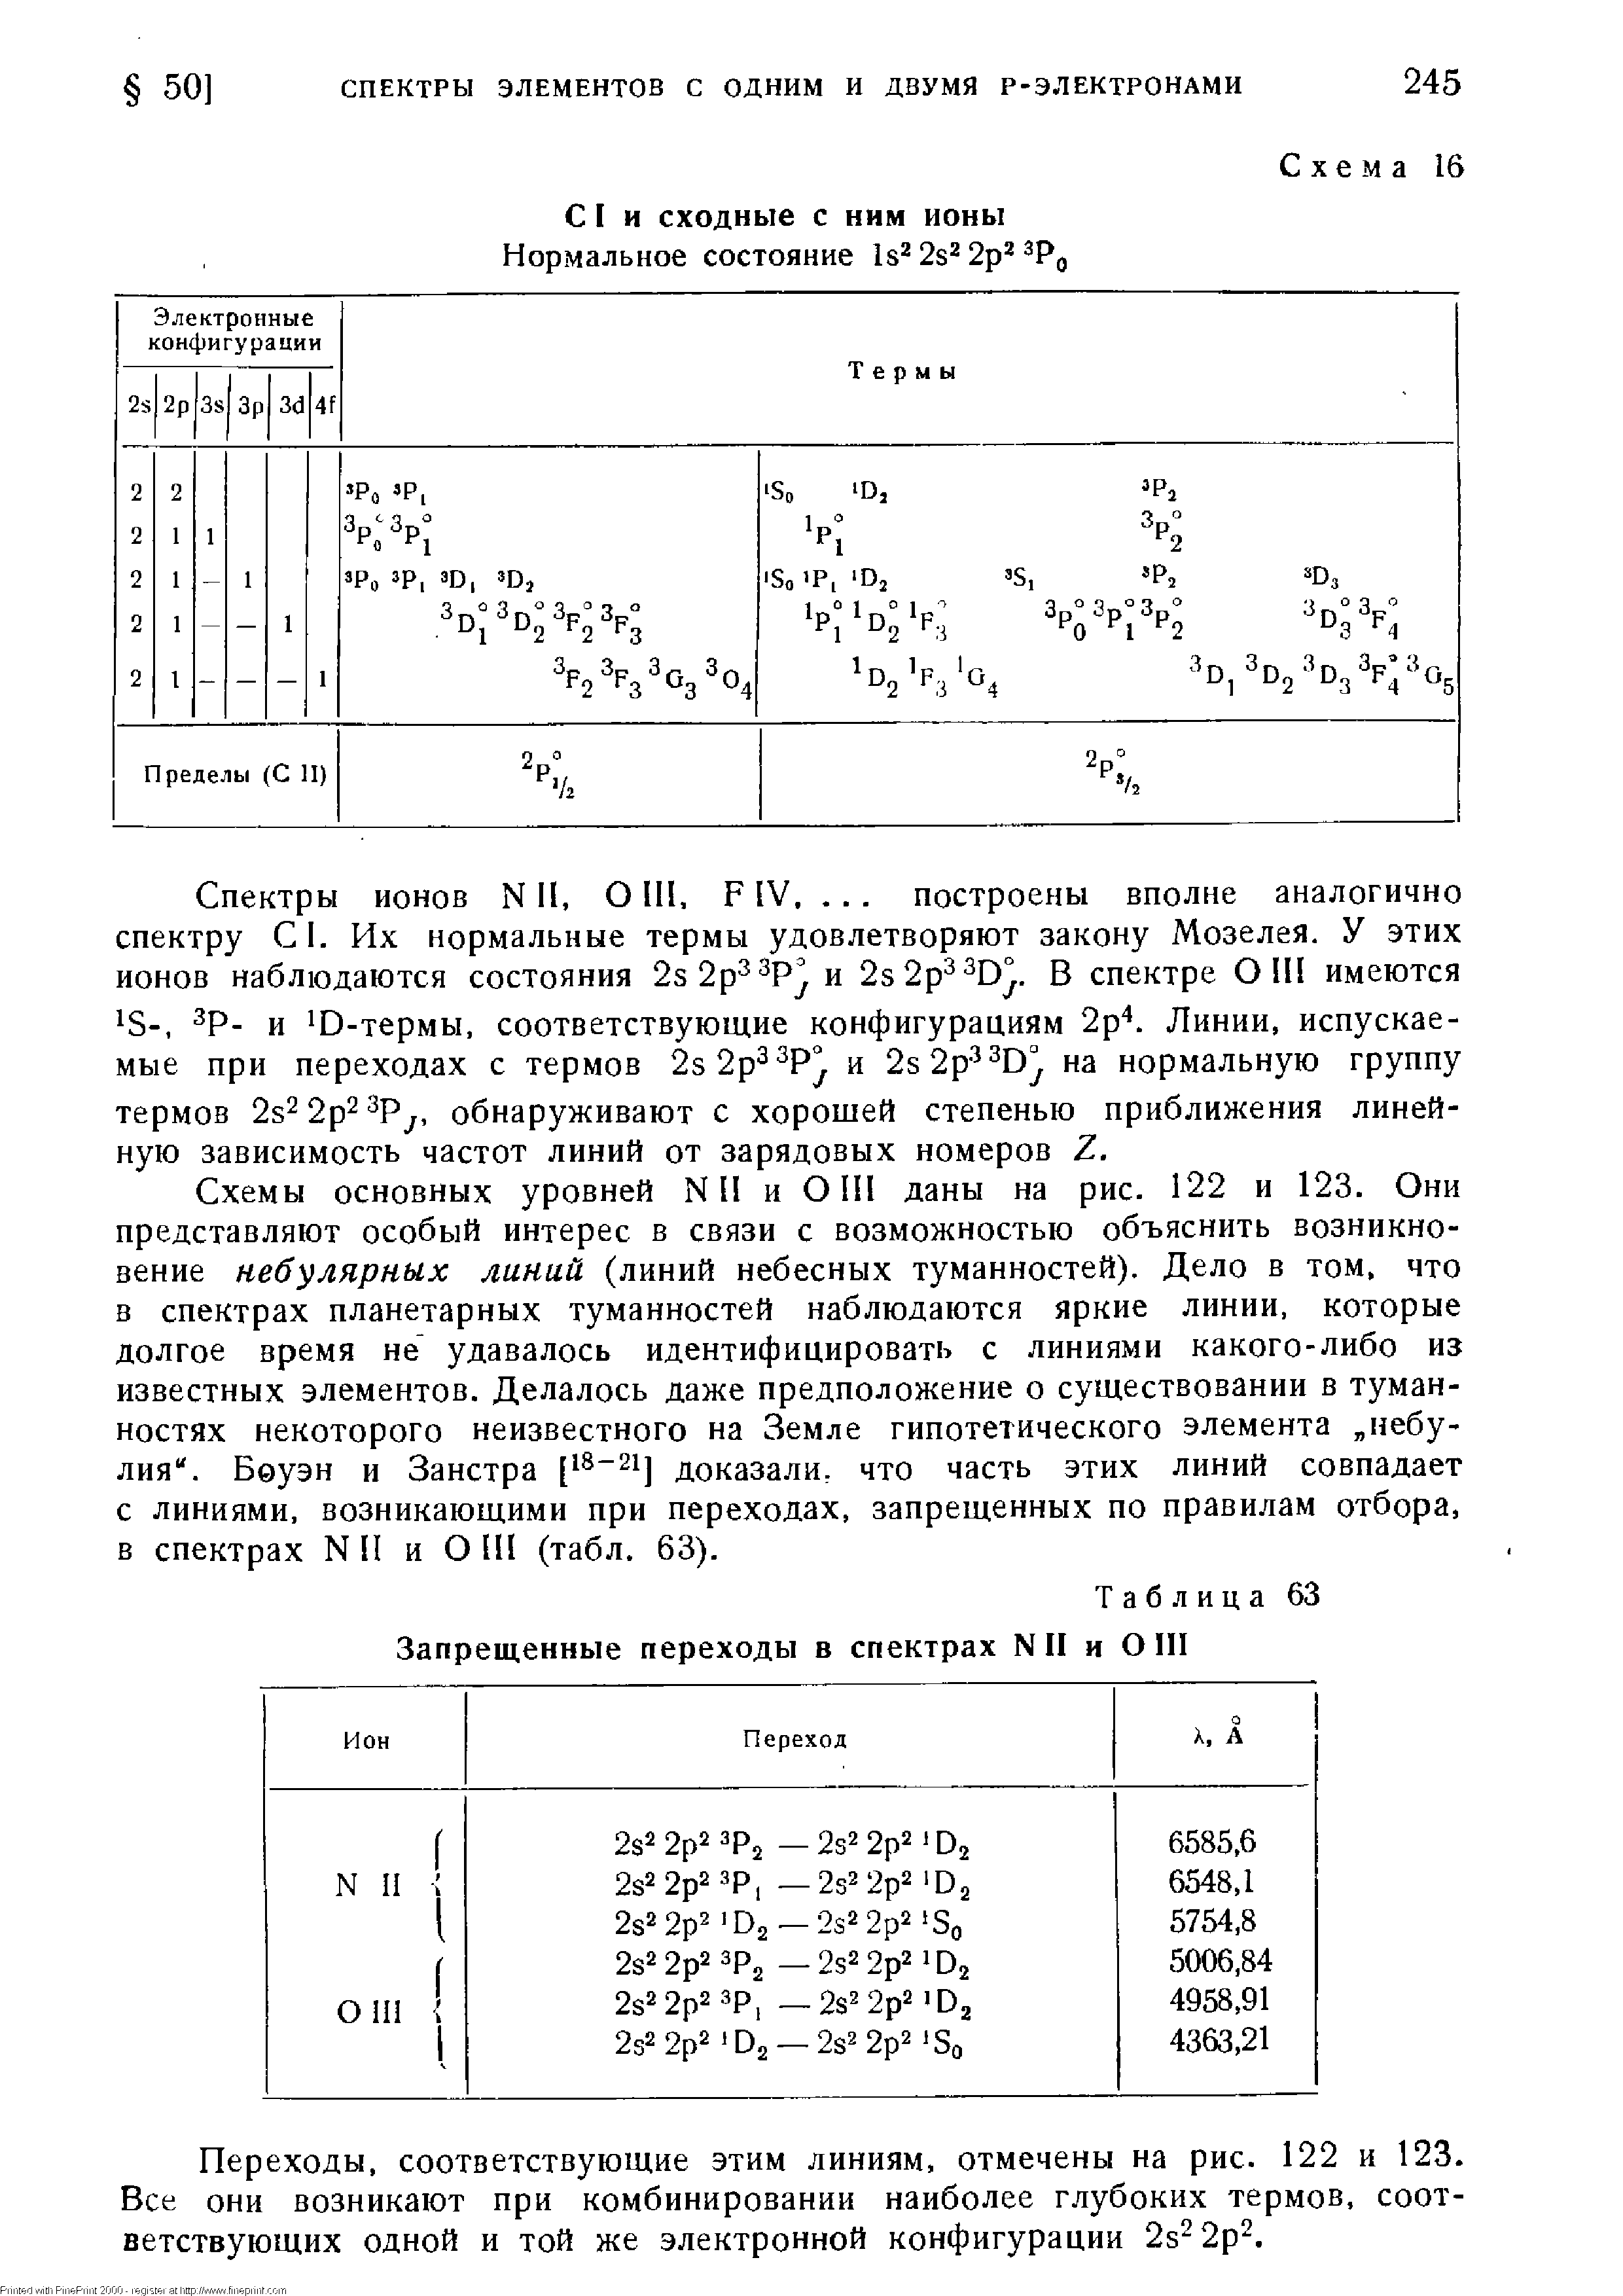 Таблица 63 Запрещенные переходы в спектрах NII и О III
